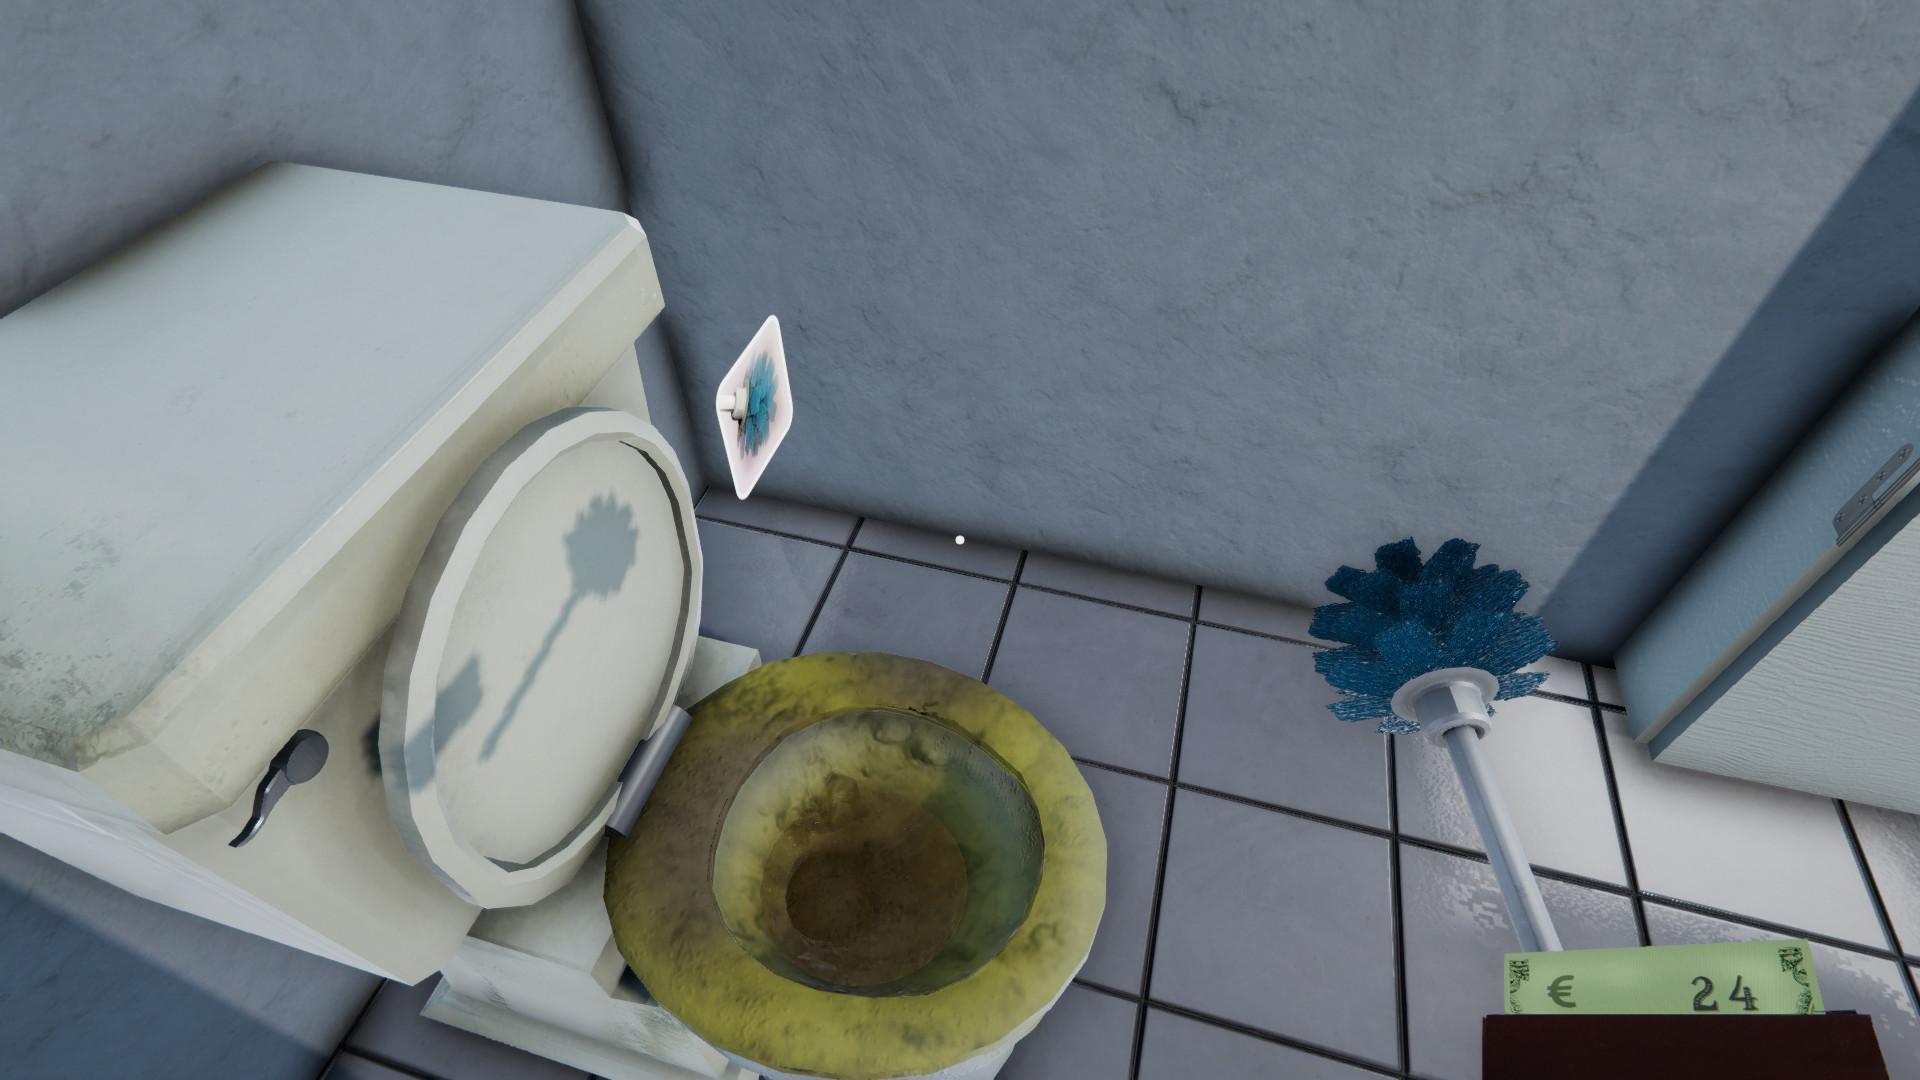 Игра туалет открытый мир. Игра Toilet Management. Туалет менеджер симулятор. Симулятор туалетов 2. Игровой унитаз.